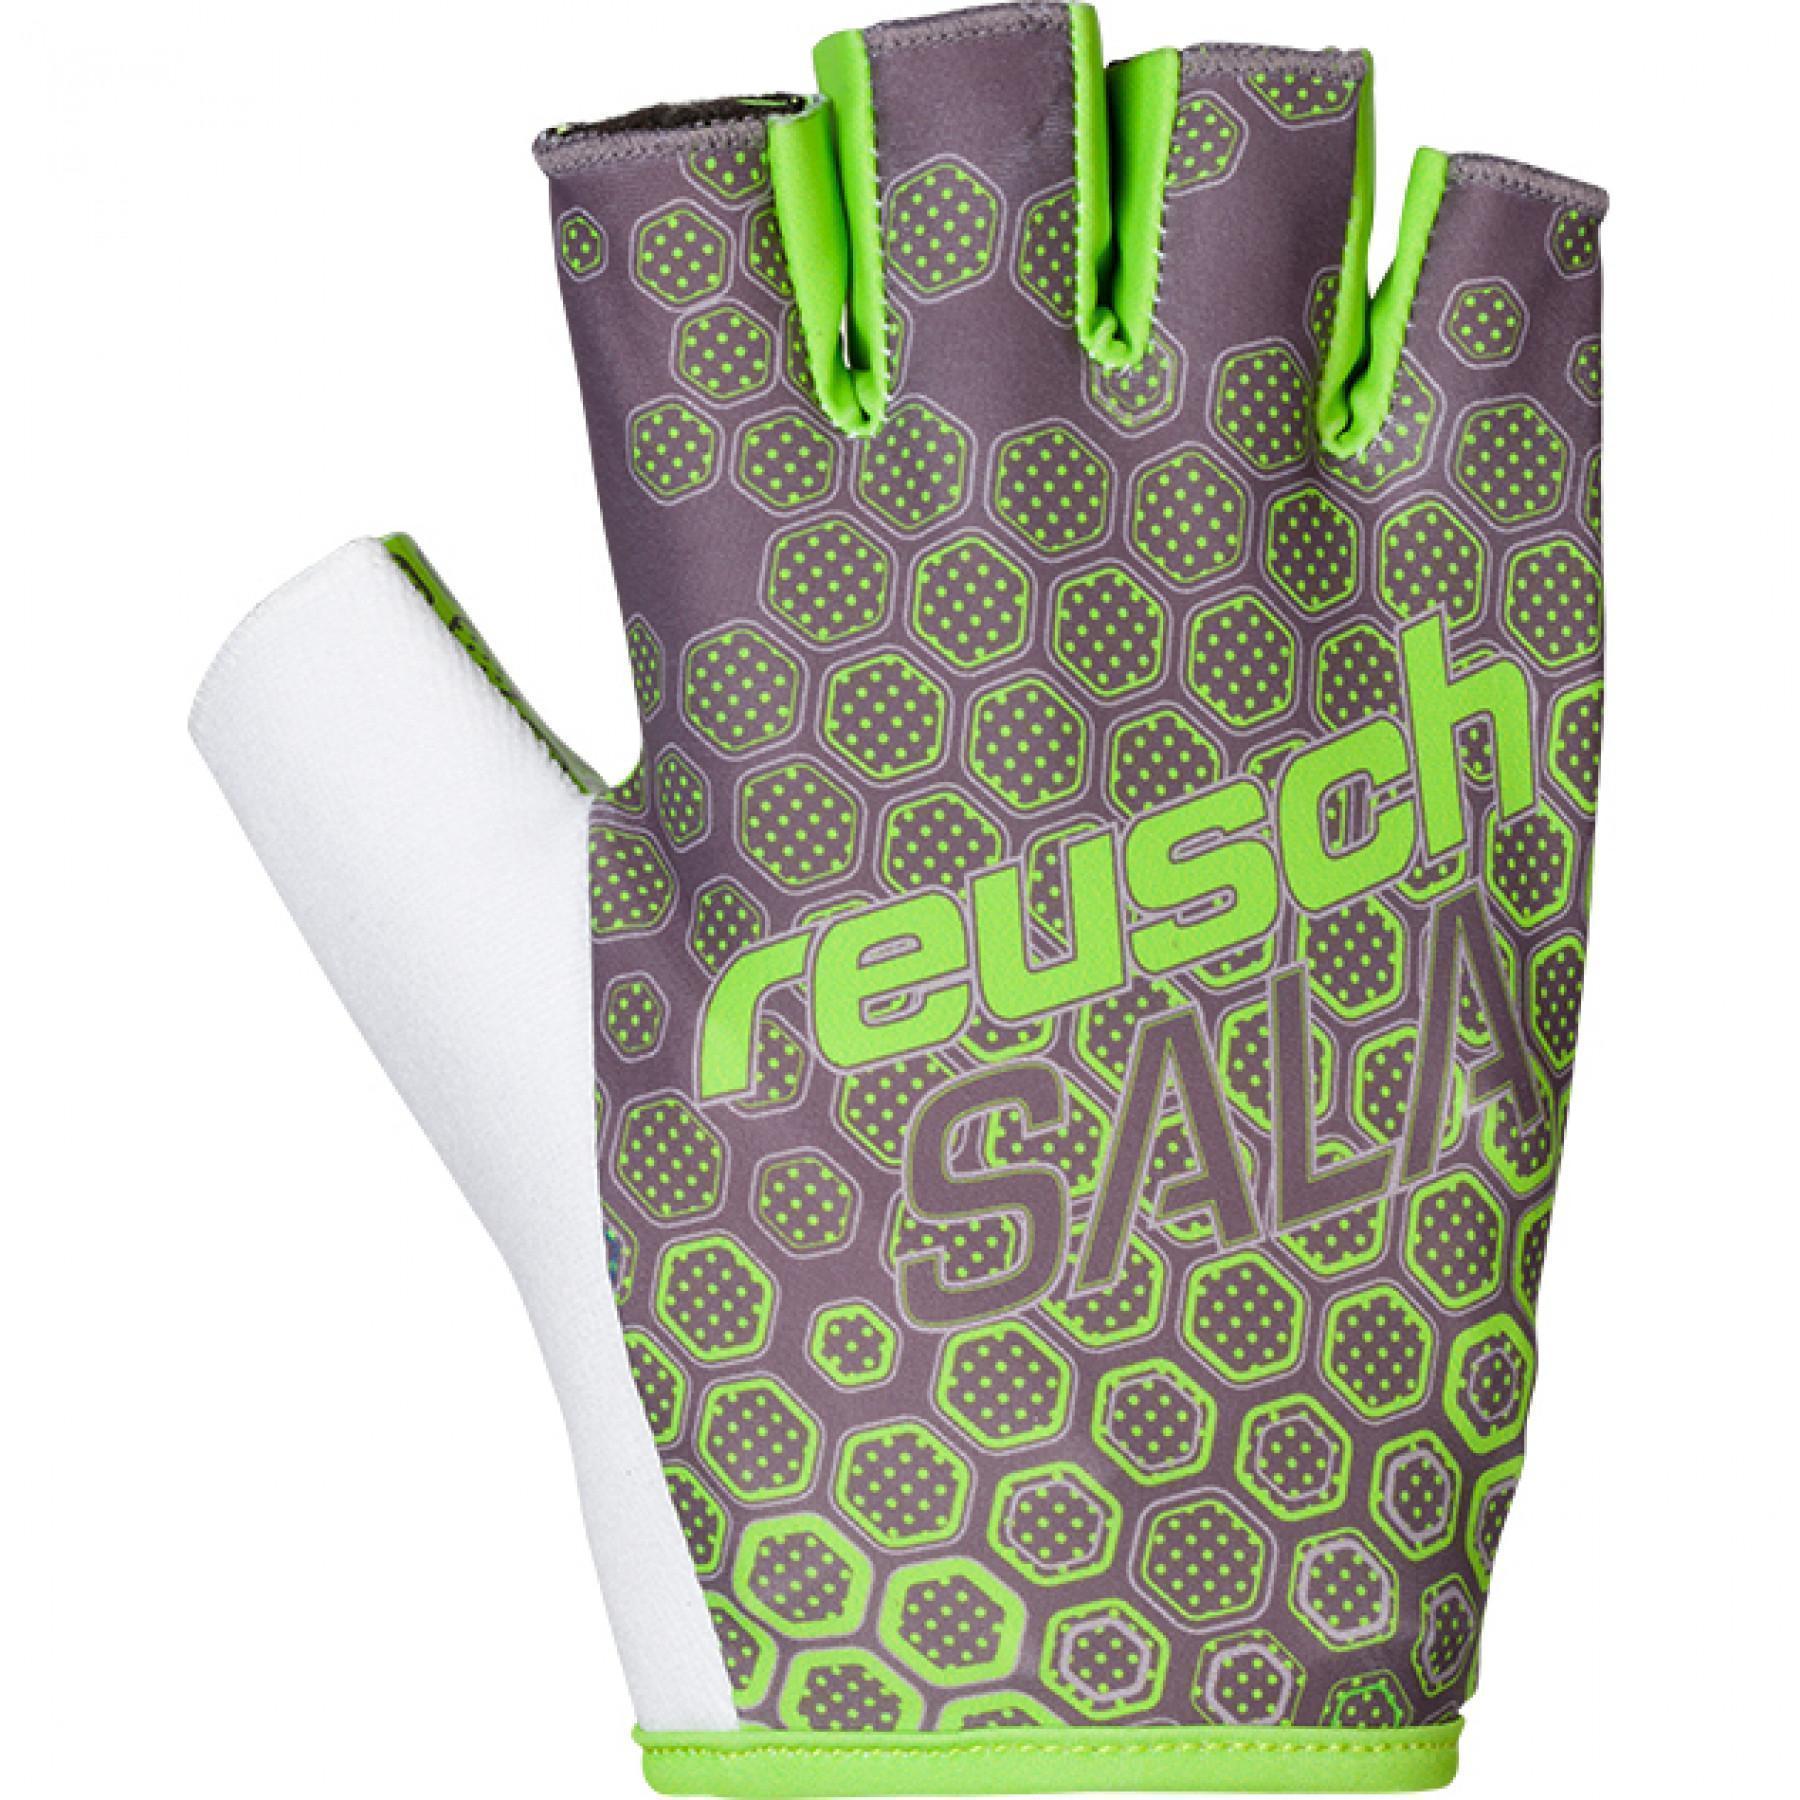 Goalkeeper gloves Reusch Futsal Pro SFX